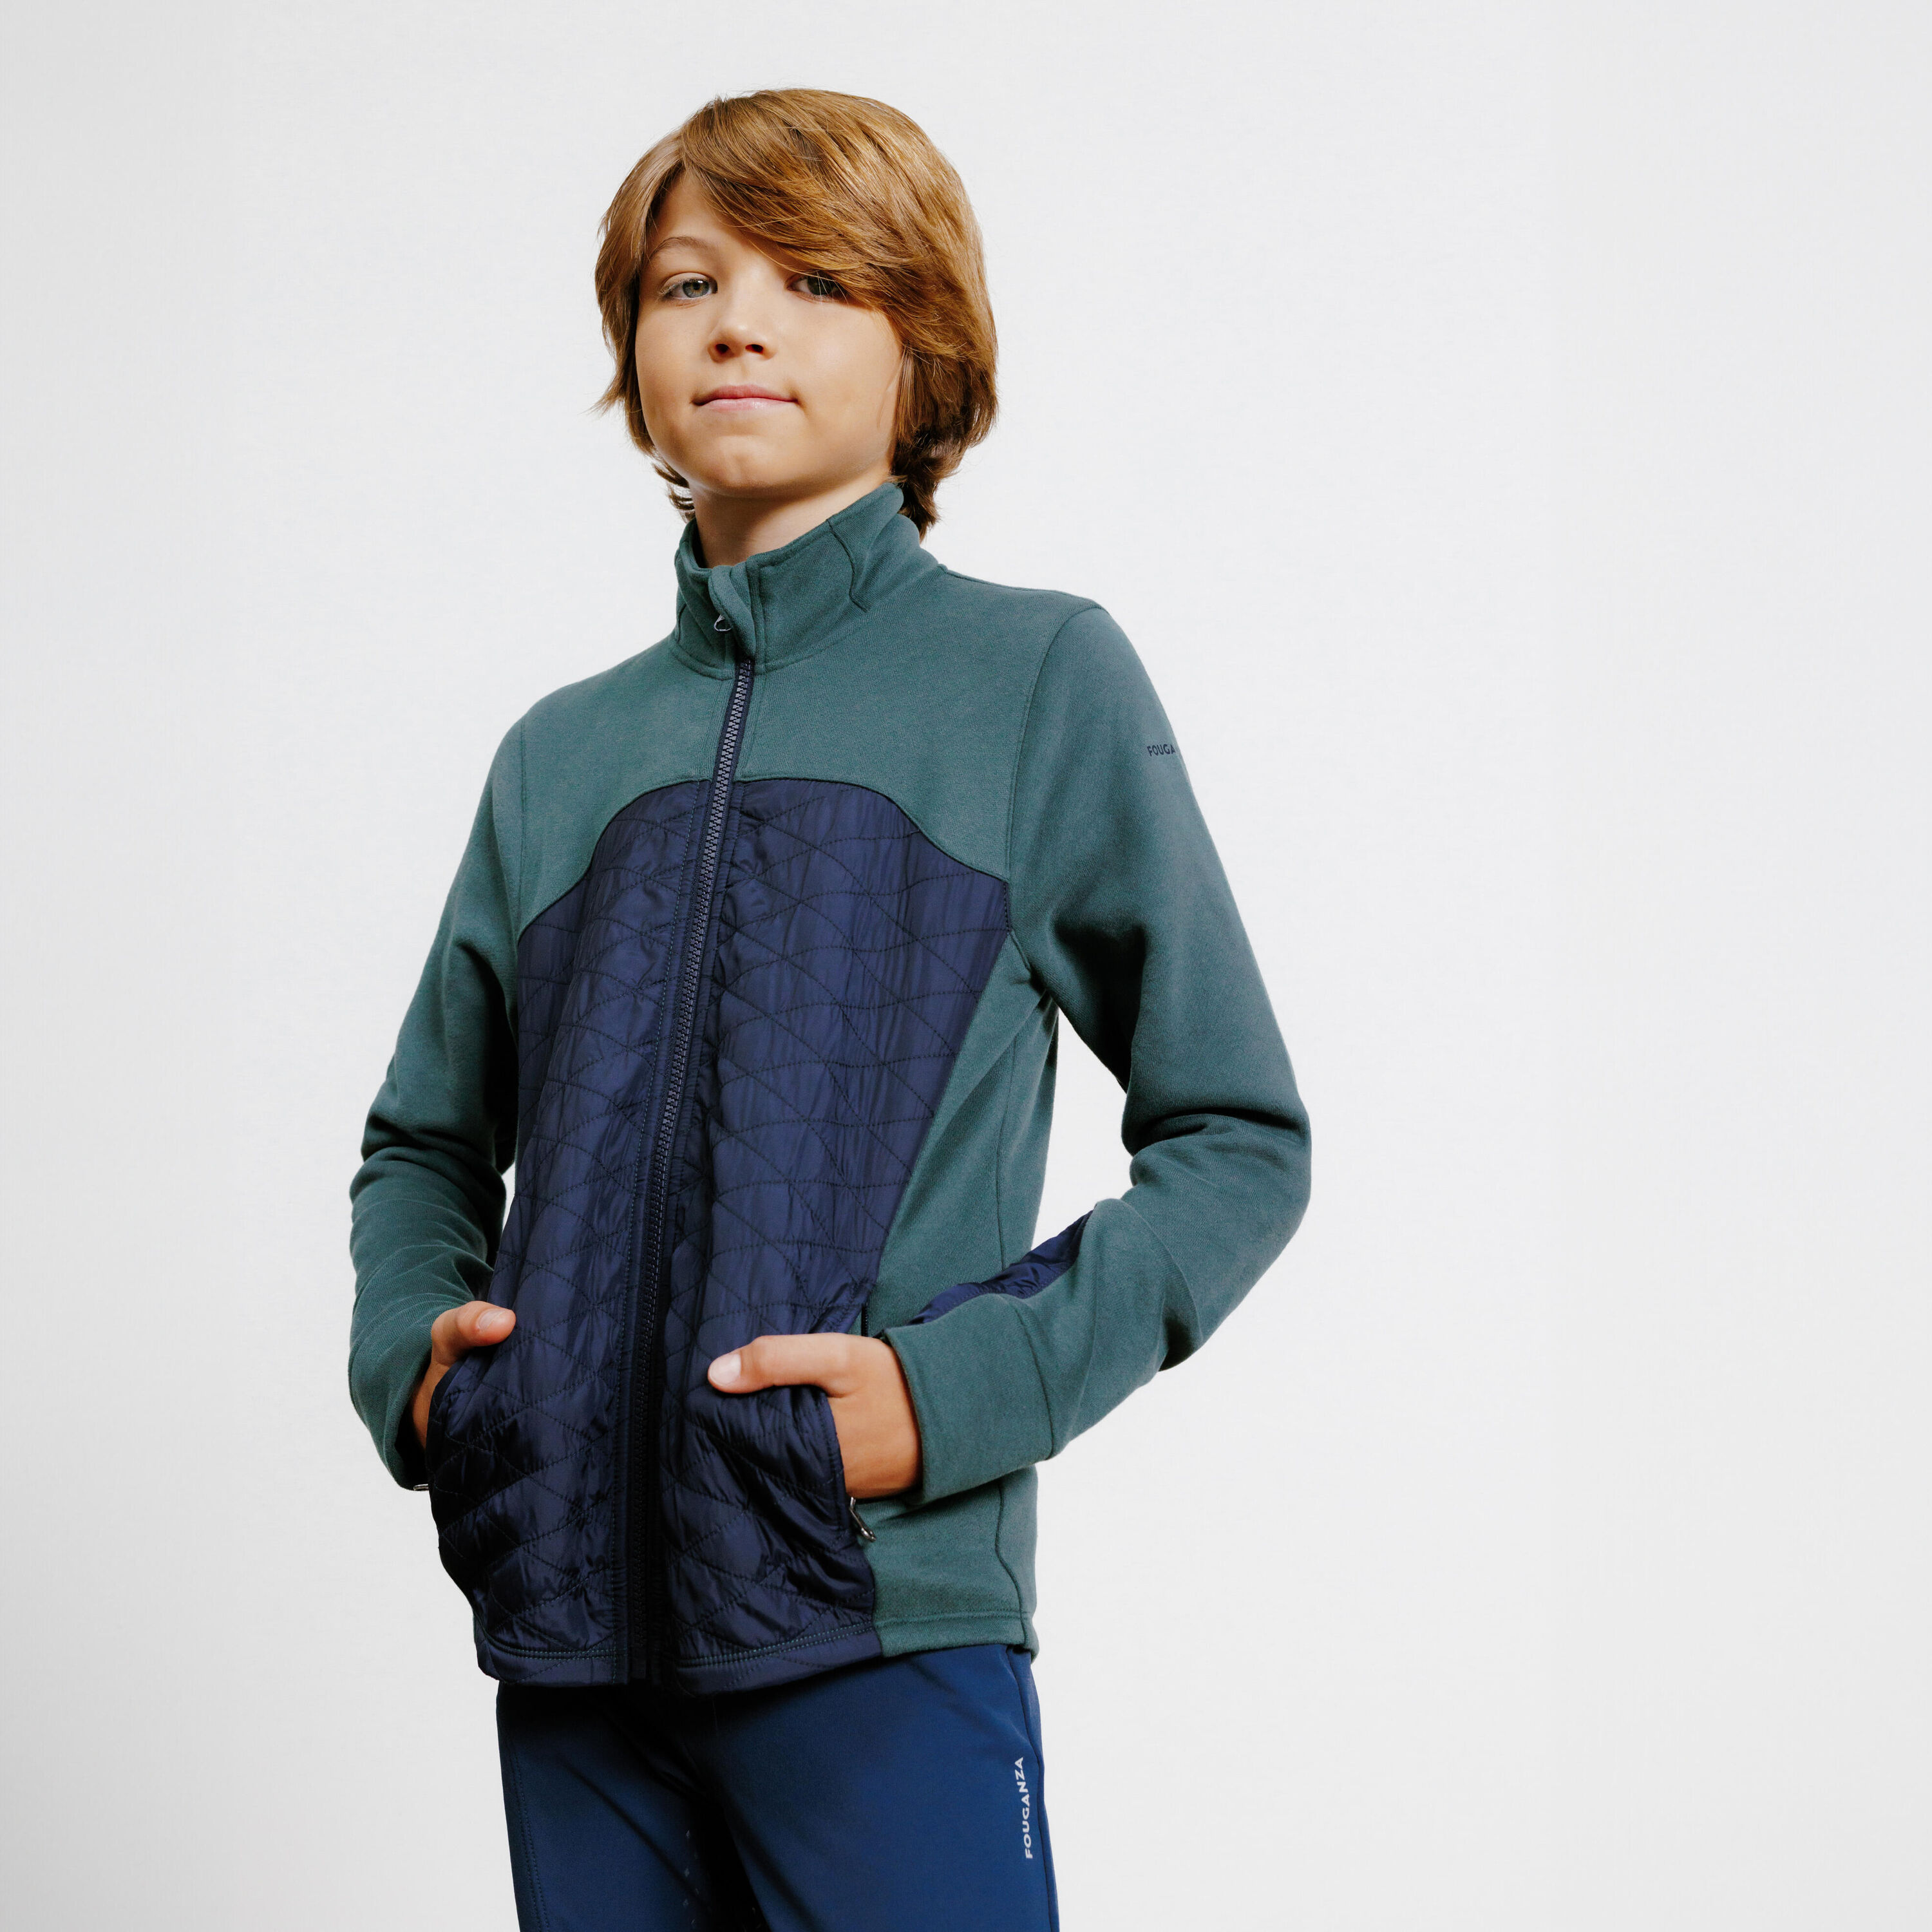 FOUGANZA Kids' Horse Riding Dual Fabric Zip Sweatshirt 500 - Green/Navy